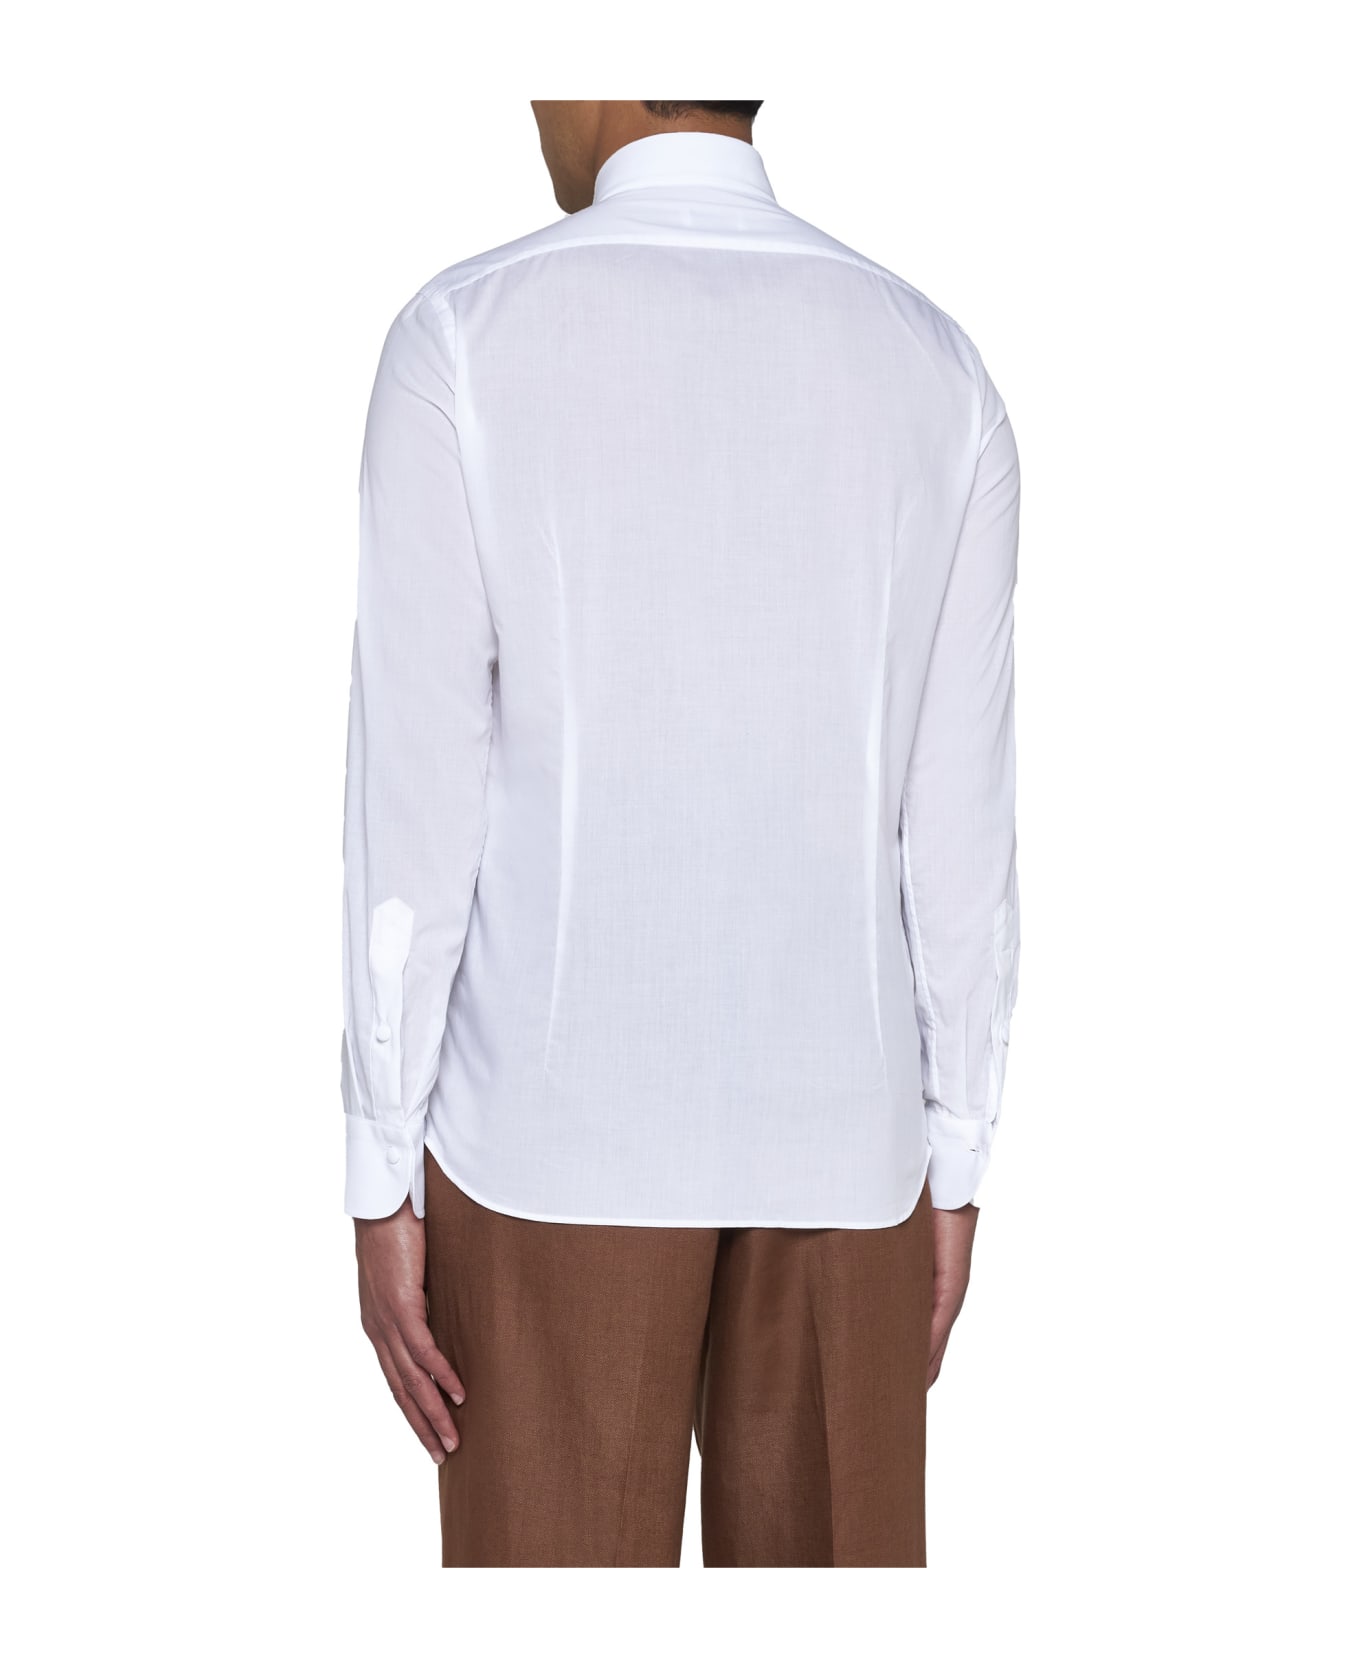 Tagliatore Shirt - Cream シャツ